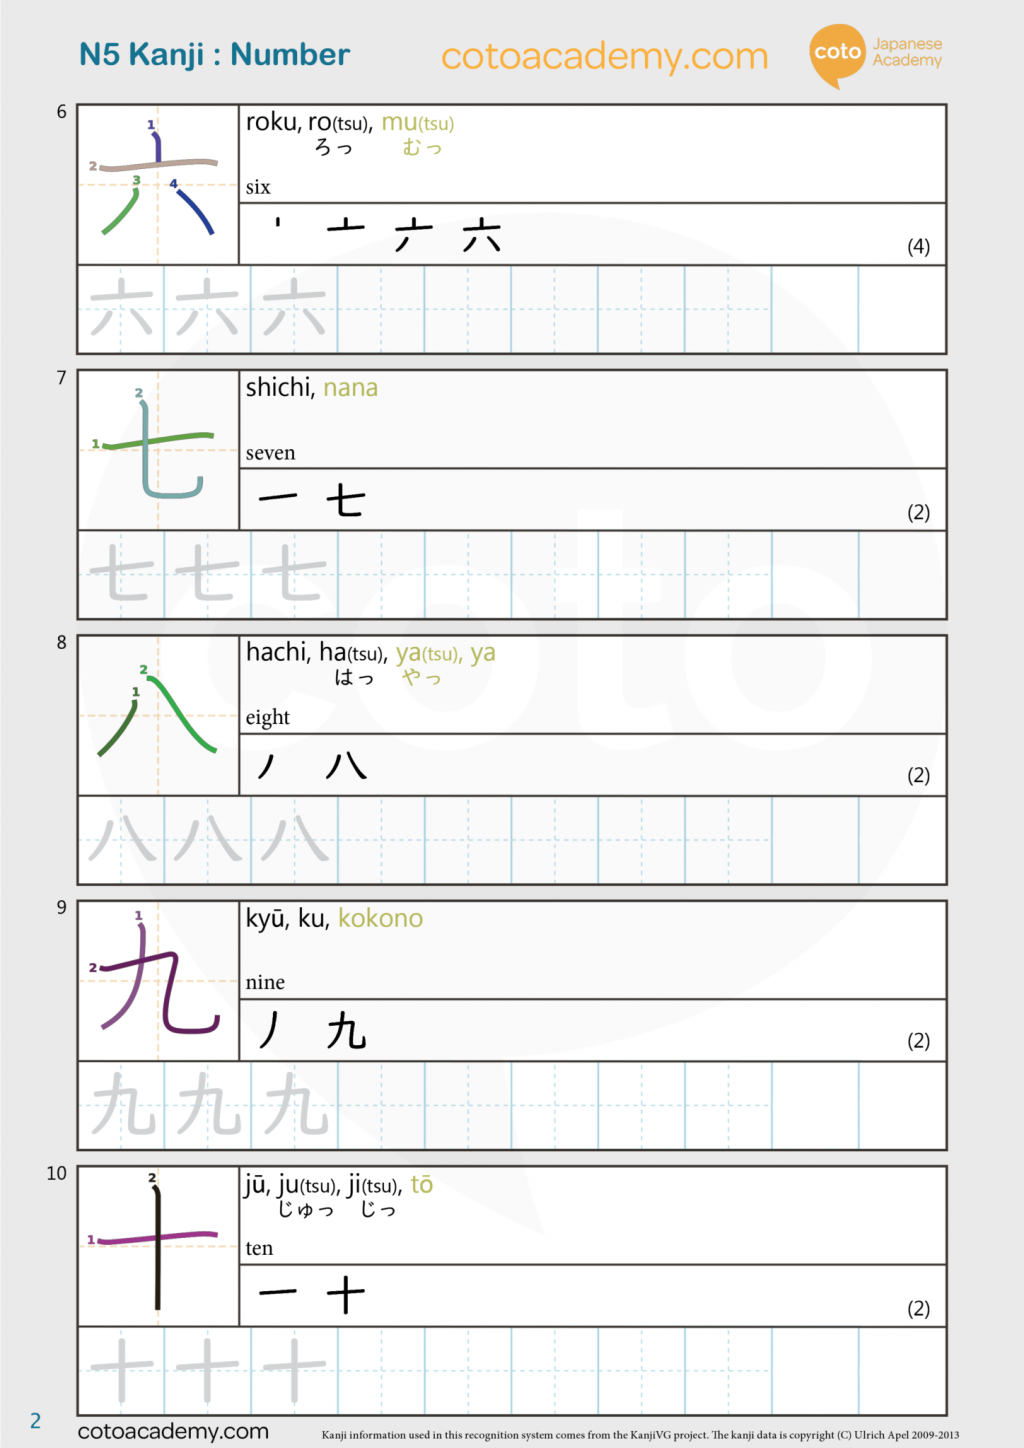 kanji practice worksheet free download jlpt n5 kanji unit 1 numbers pdf japanese language school tokyo yokohama coto academy